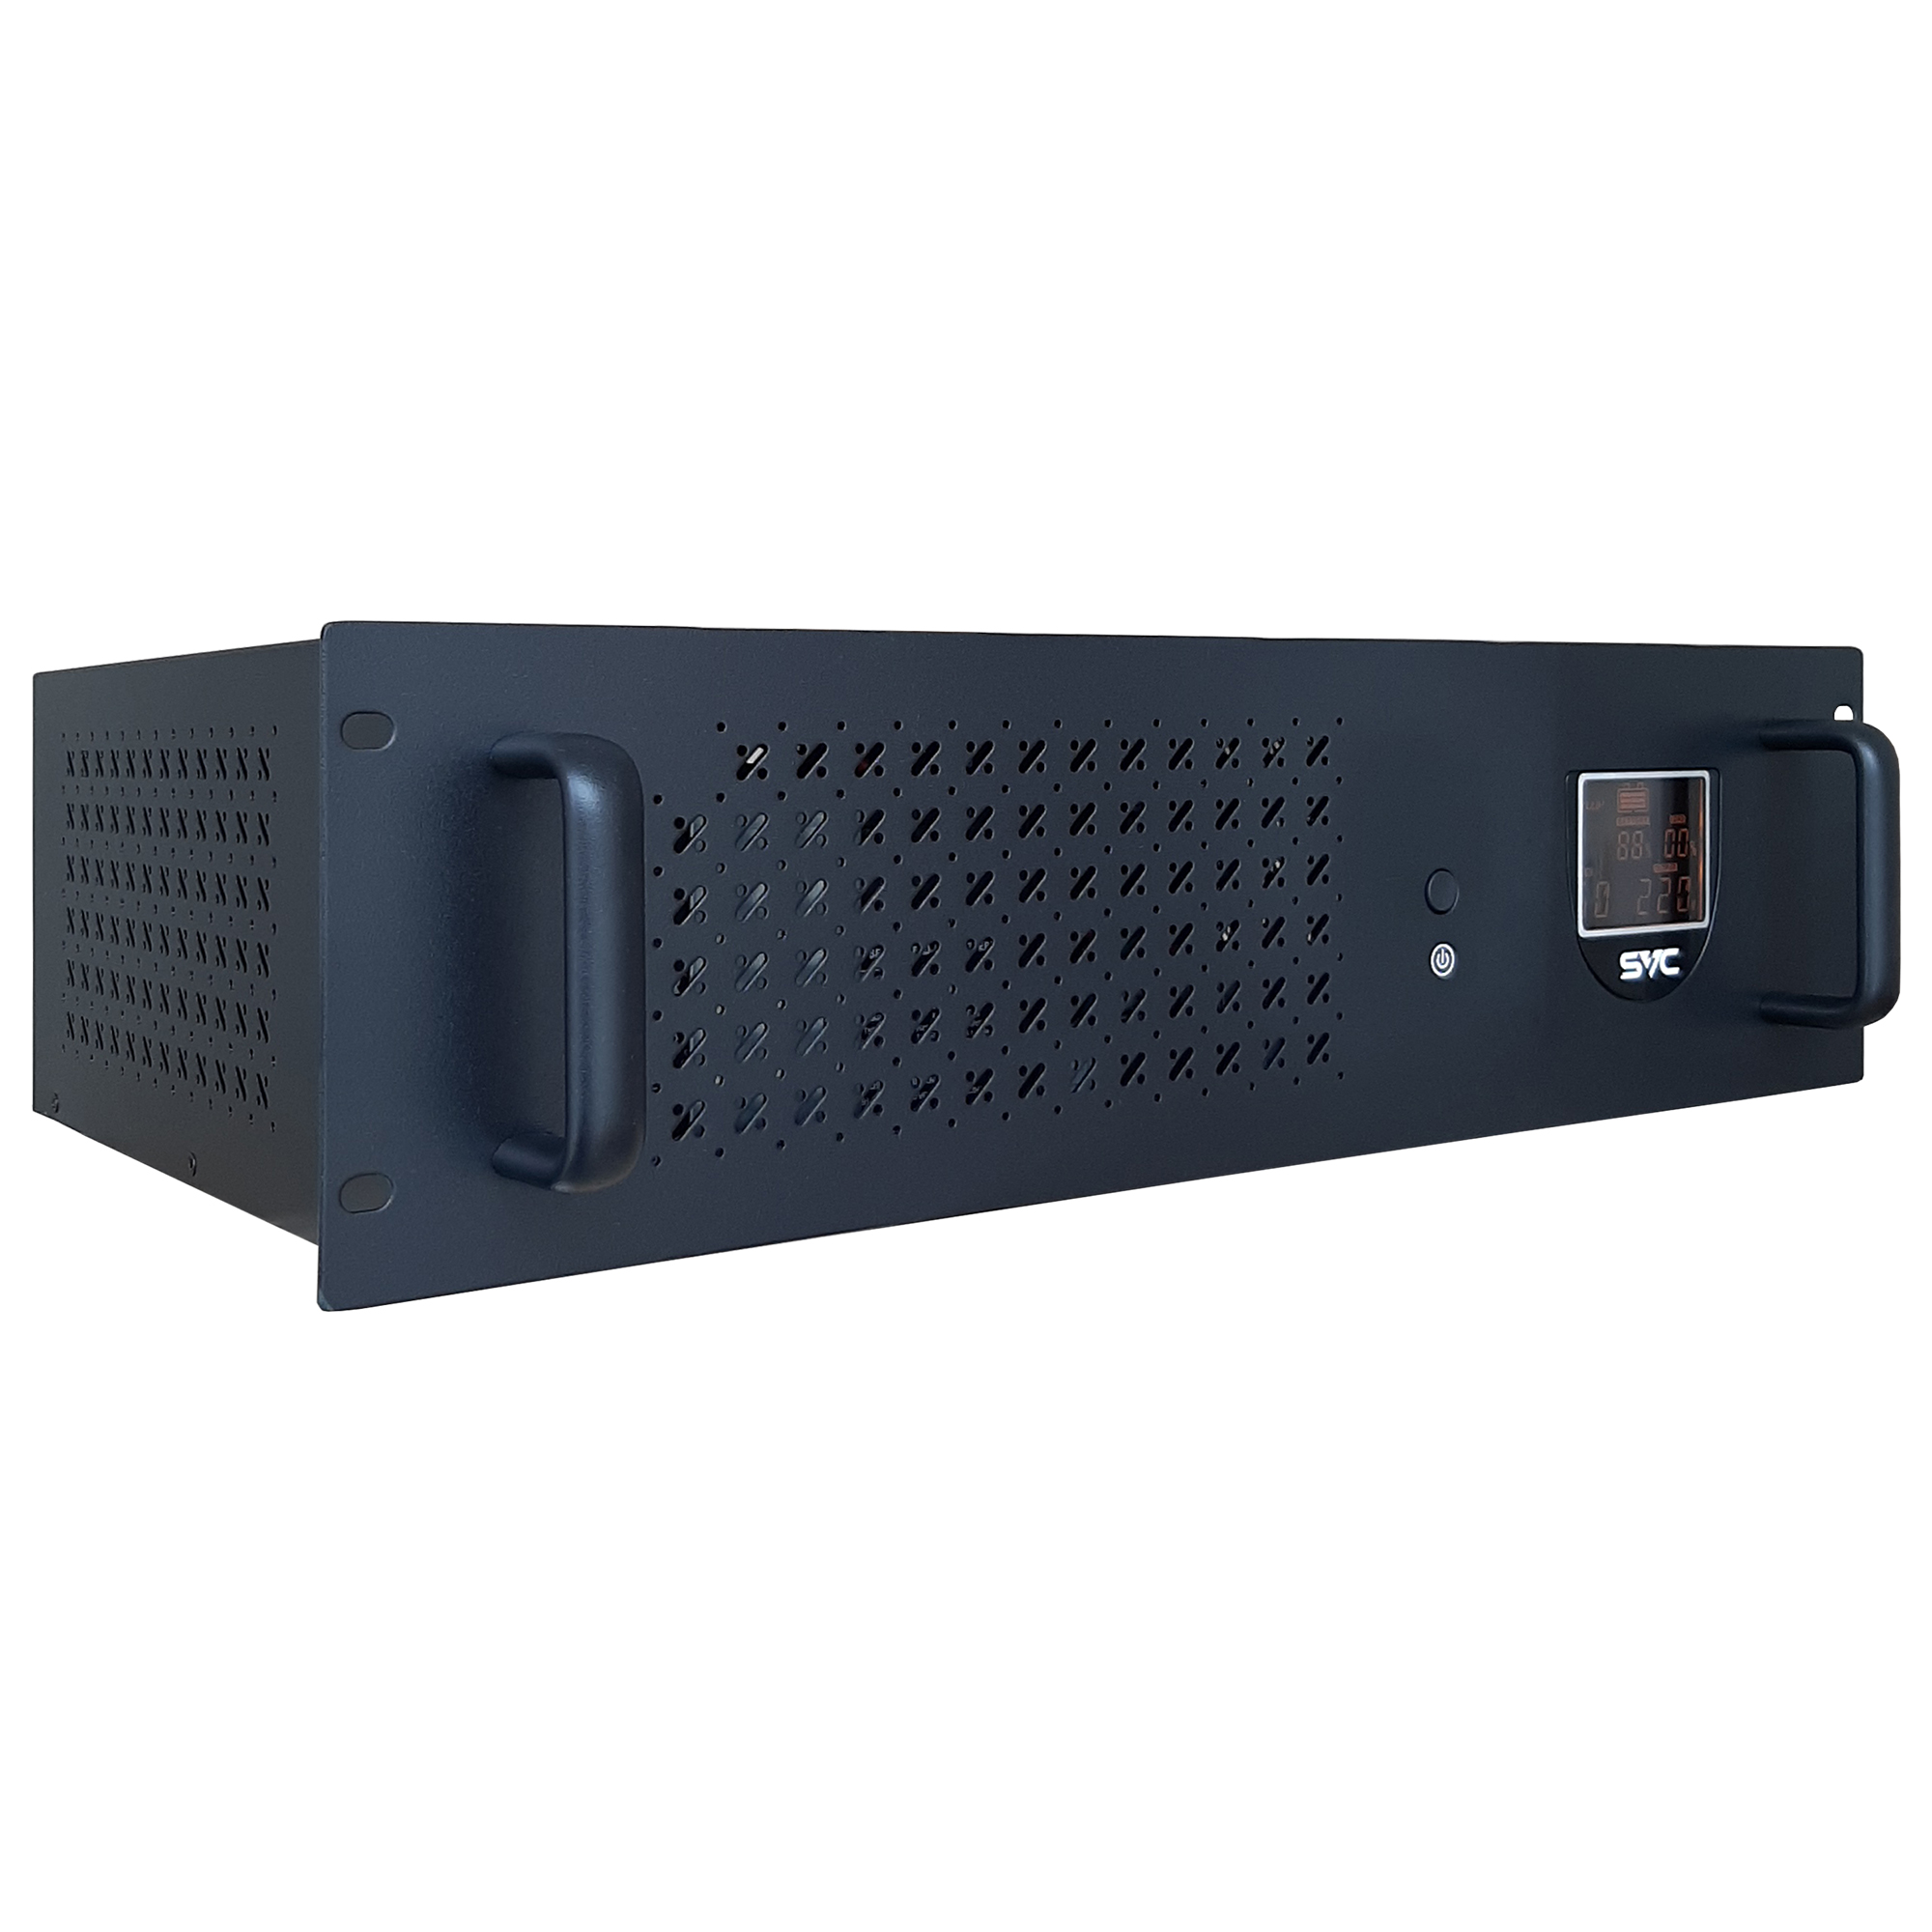 ИБП SVC RTO-1.5K-LCD/R, 1500VA, 900W, EURO, розеток - 2, USB, черный (RTO-1.5K-LCD/R)